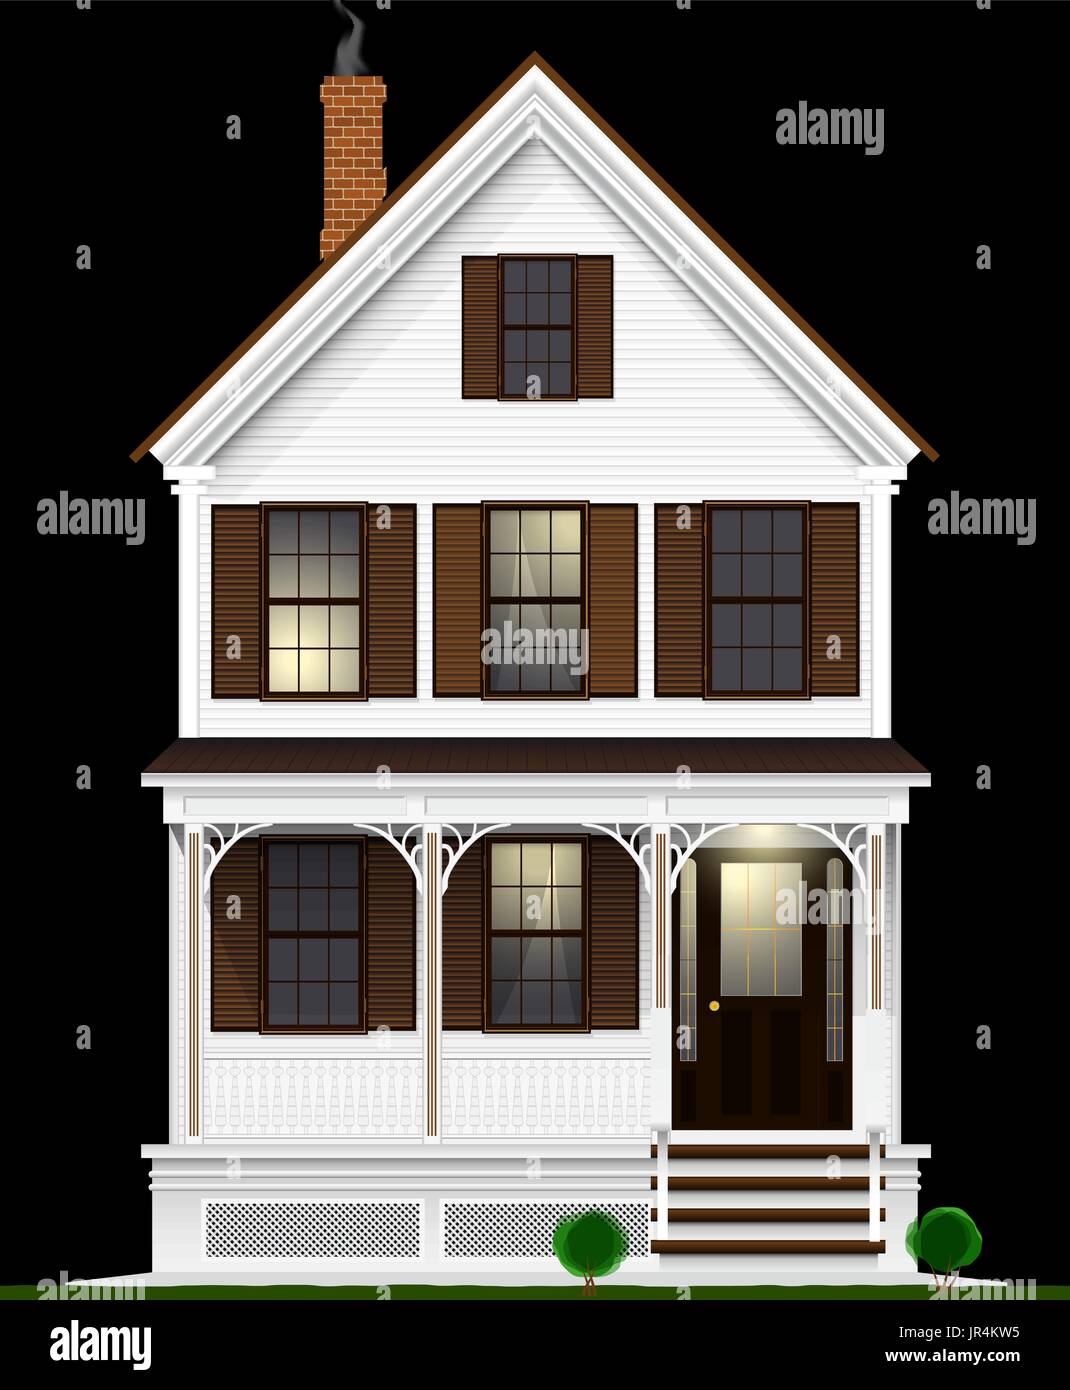 Un américain classique et typique maison en bois peint avec peinture blanche. Deux étages, sous-sol et grenier. Vue de nuit. Illustration de Vecteur